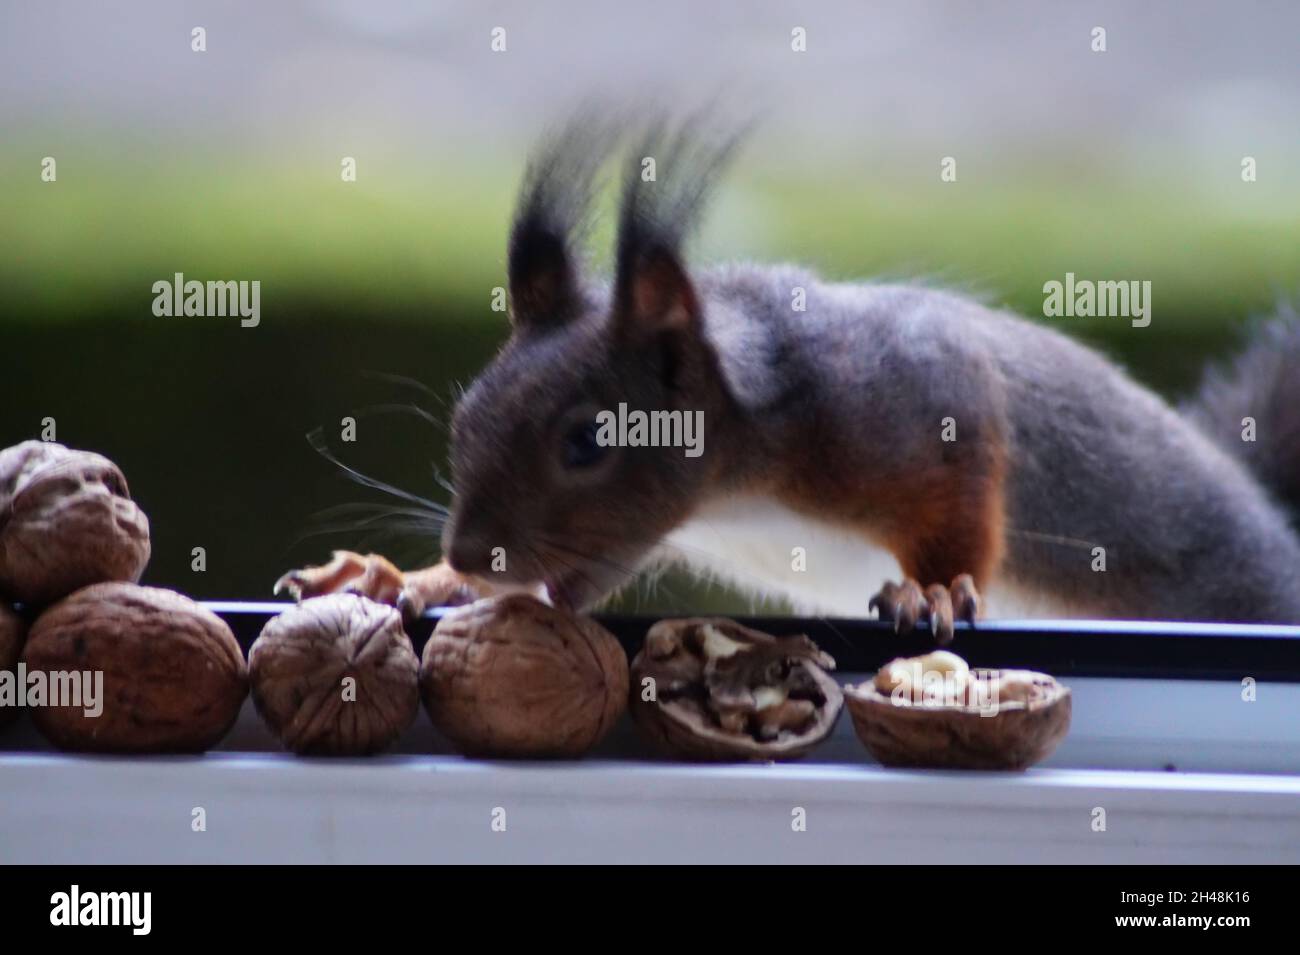 Eichhörnchen bei der Nahrungssuche Foto de stock